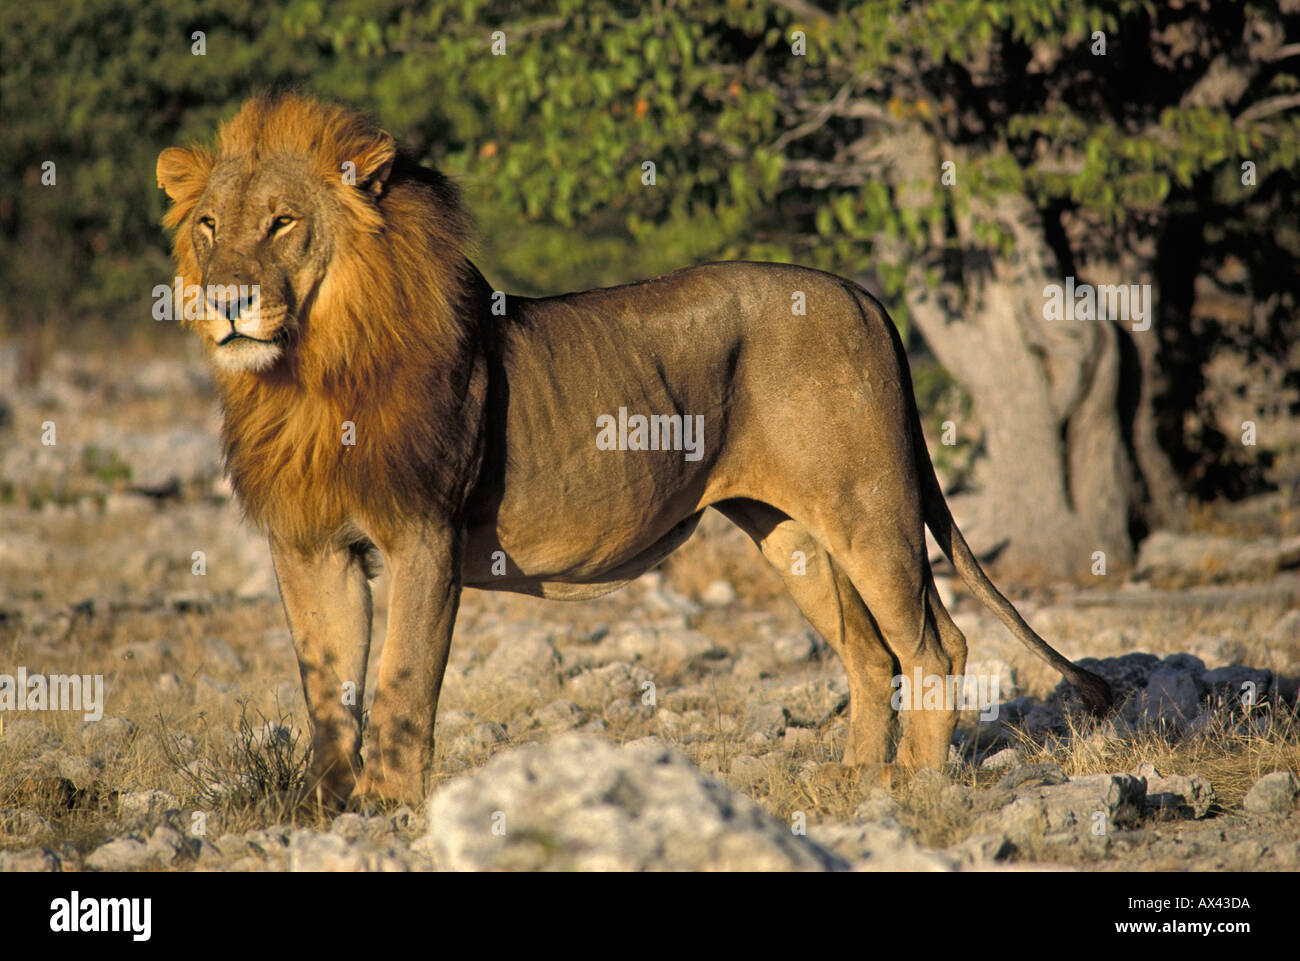 Stehender Löwe Panthera leo Etosha Nationalpark Namibia Standing Lion Panthera leo Etosha National Park Namibia Stock Photo